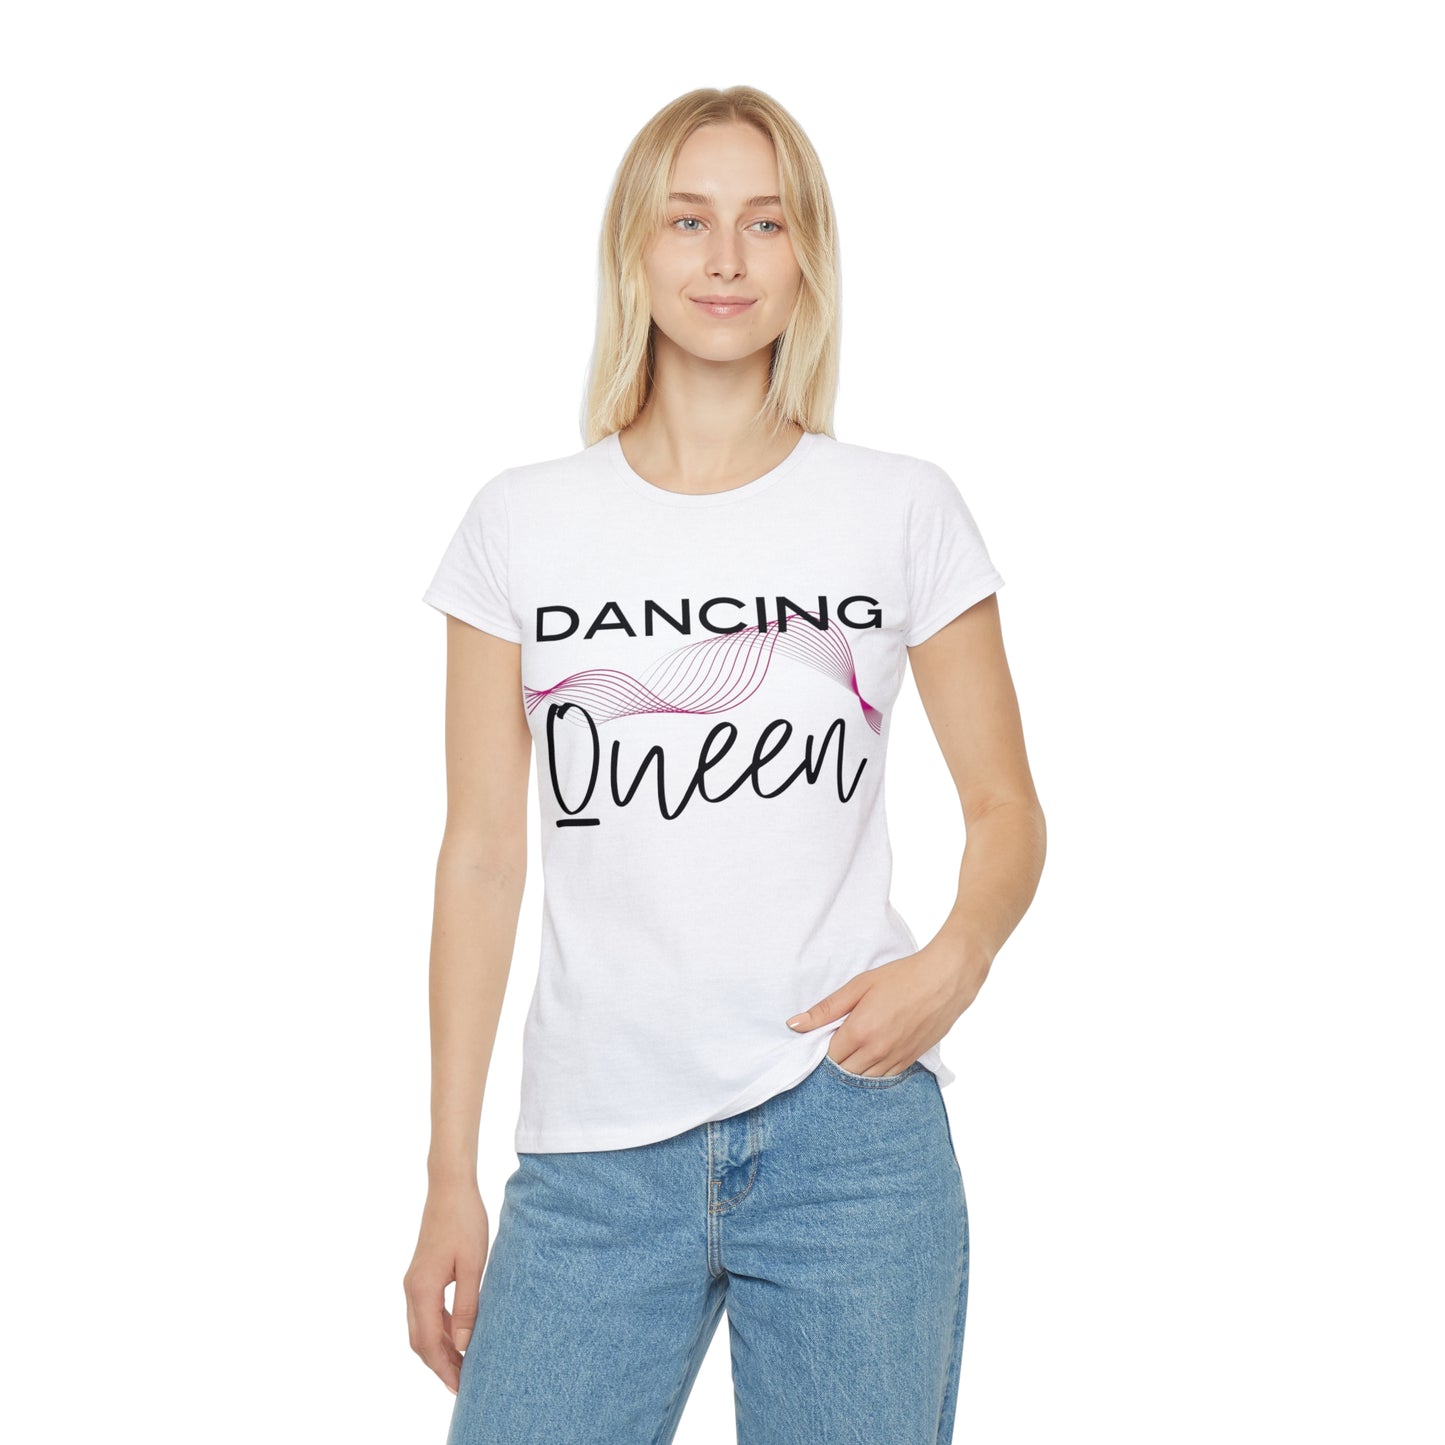 Dancing queen Shirt